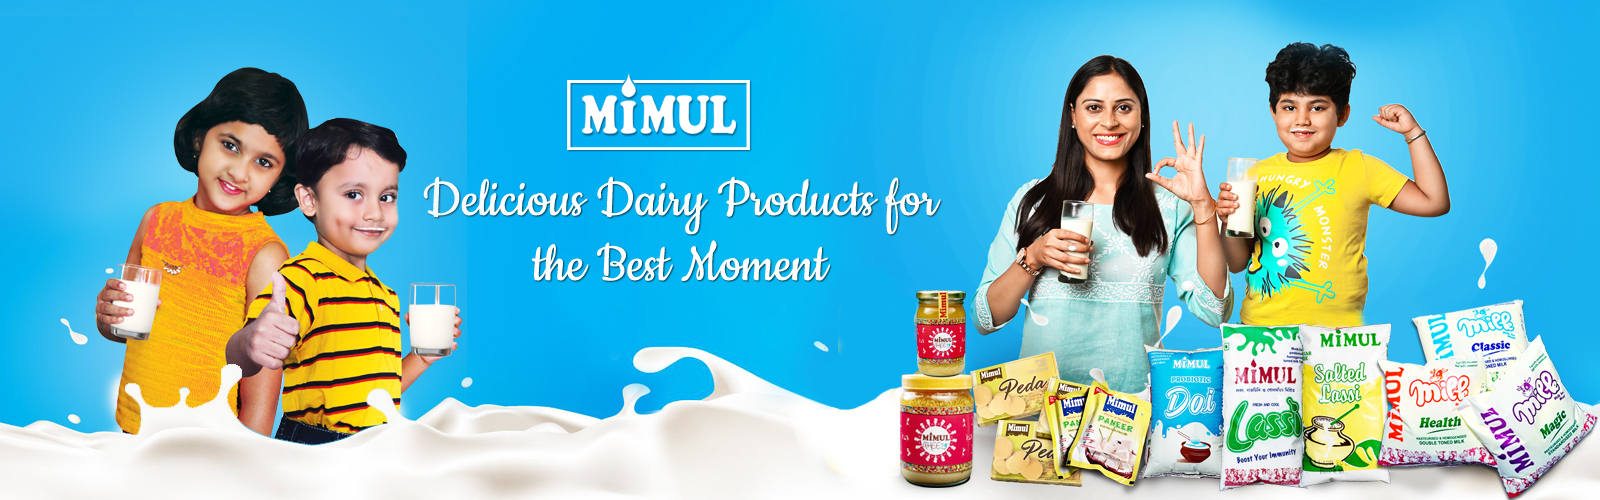 Mimul - The Midnapore Co-operative Milk Producers’ Union Ltd.